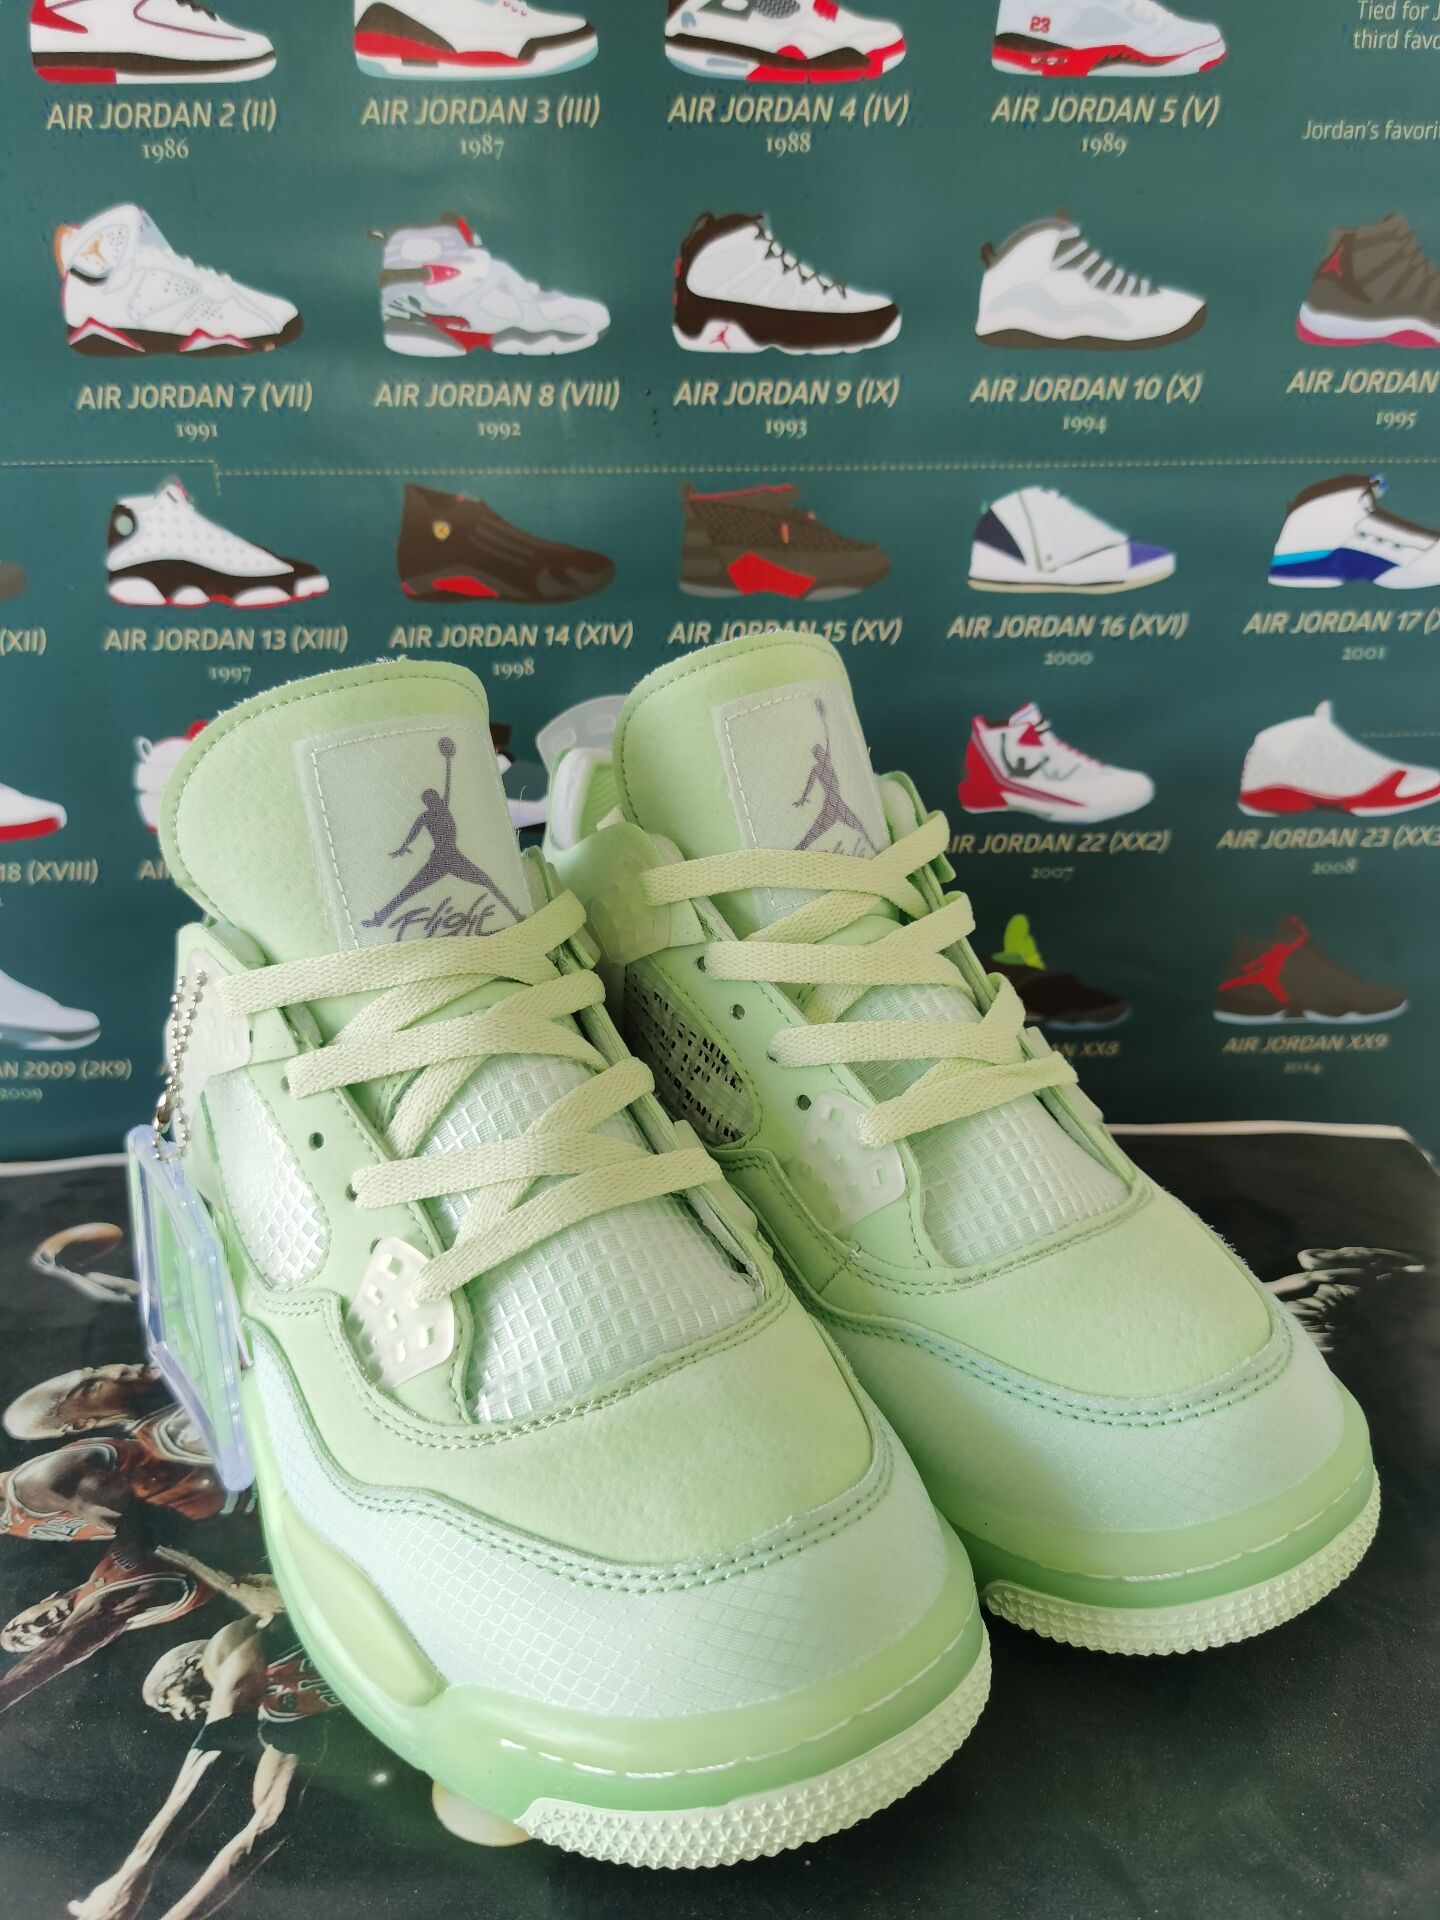 Original Air Jordan 4 Green Shoes